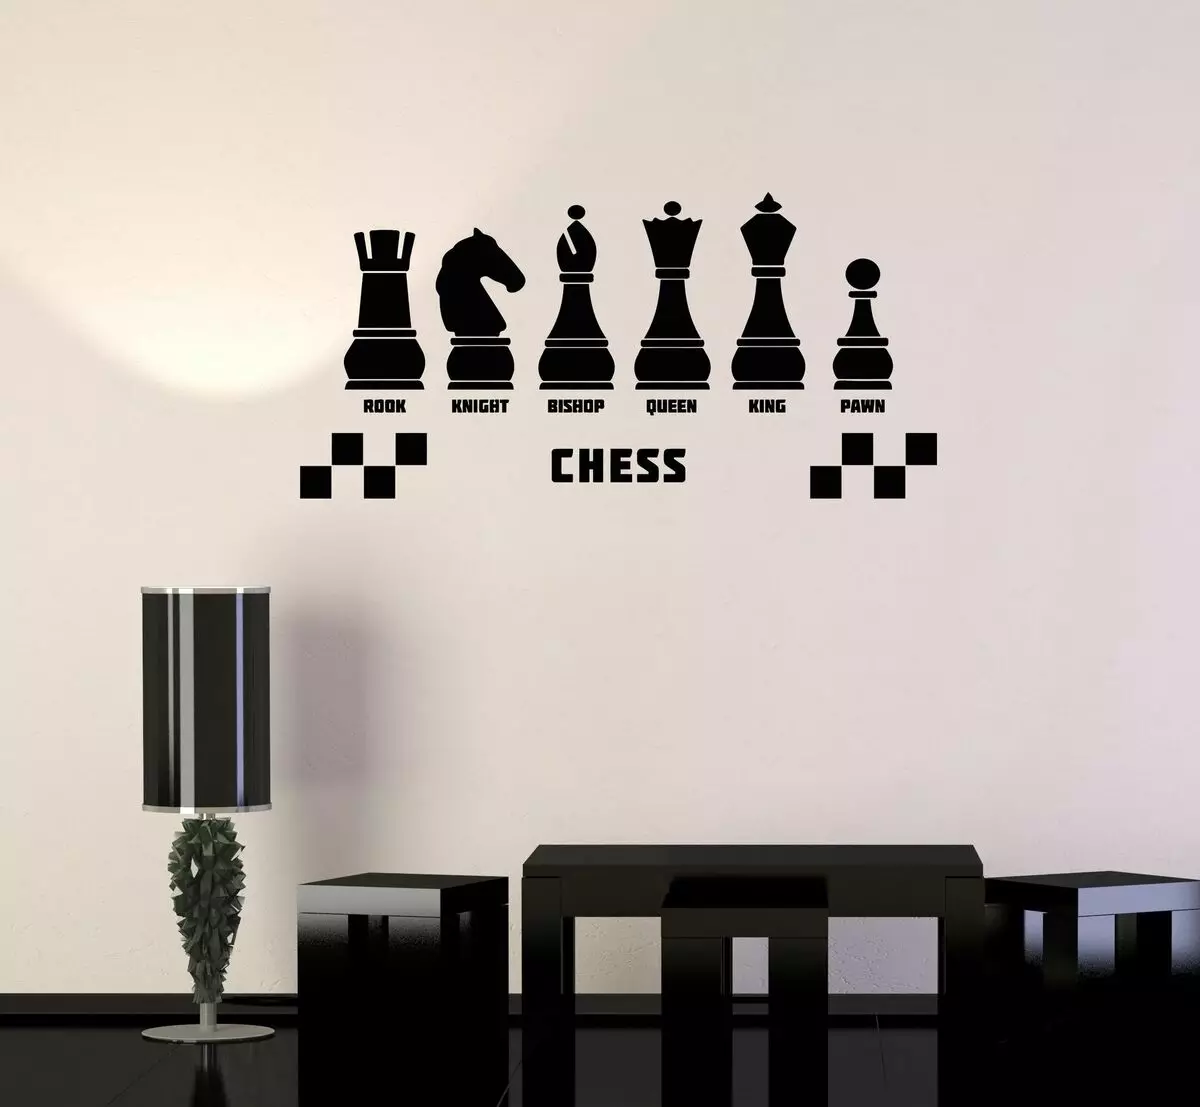 Δημιουργική χρήση μιας σκακιού στο εσωτερικό